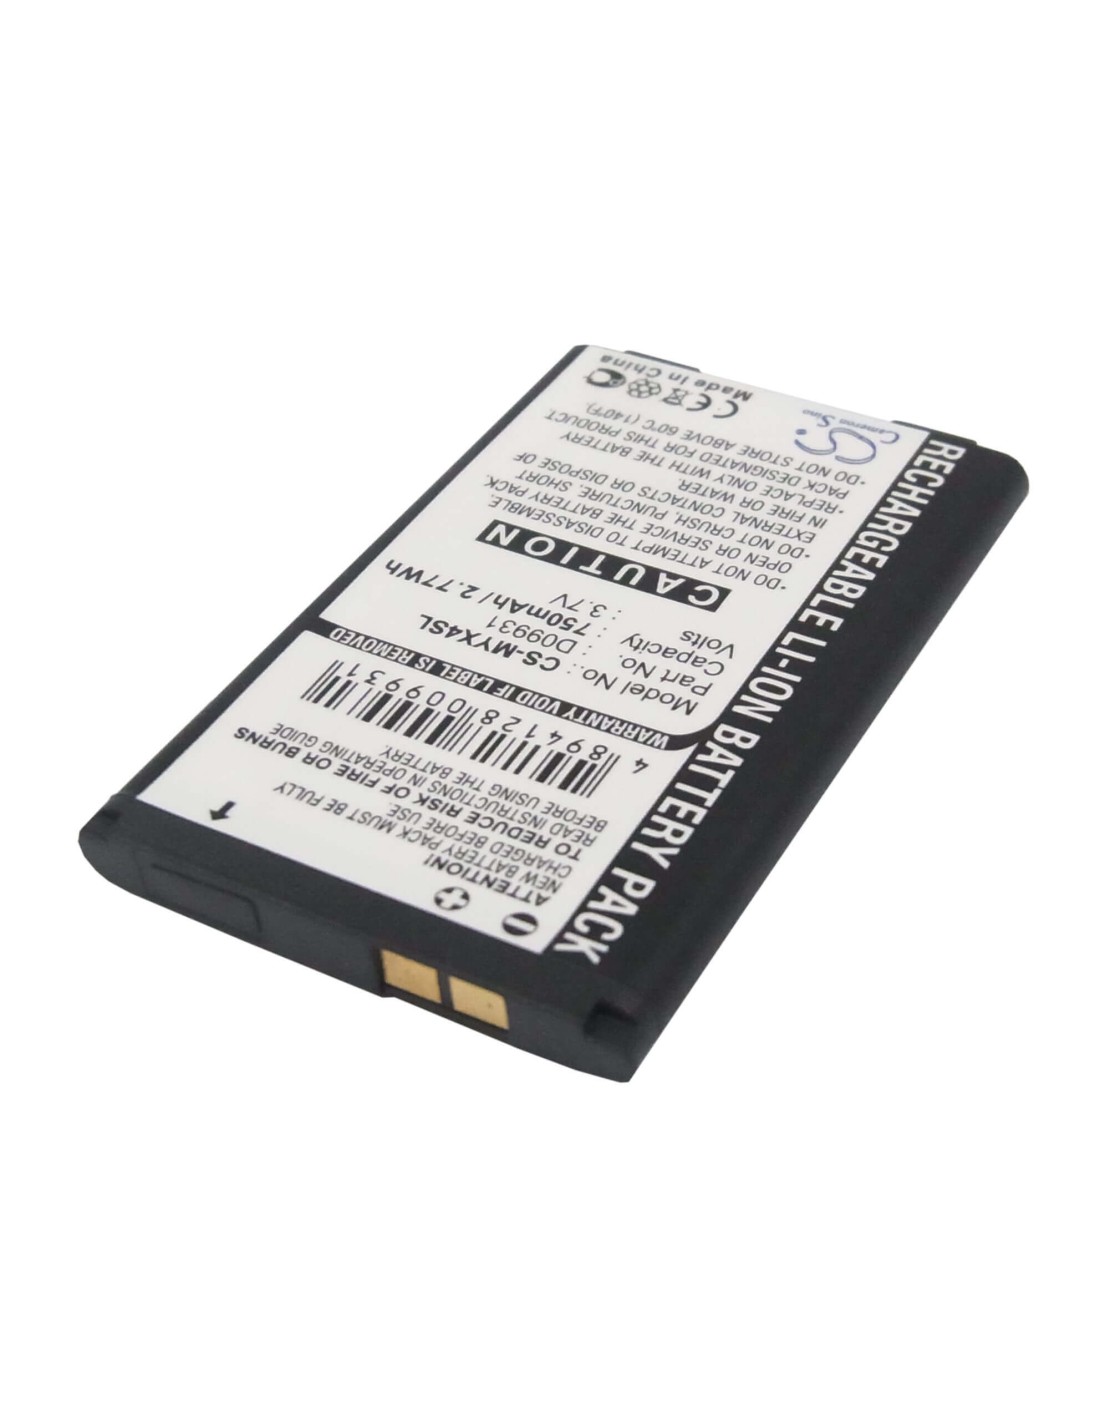 Battery for Sagem MYX4, MYX-4, MYX-4T 3.7V, 750mAh - 2.78Wh